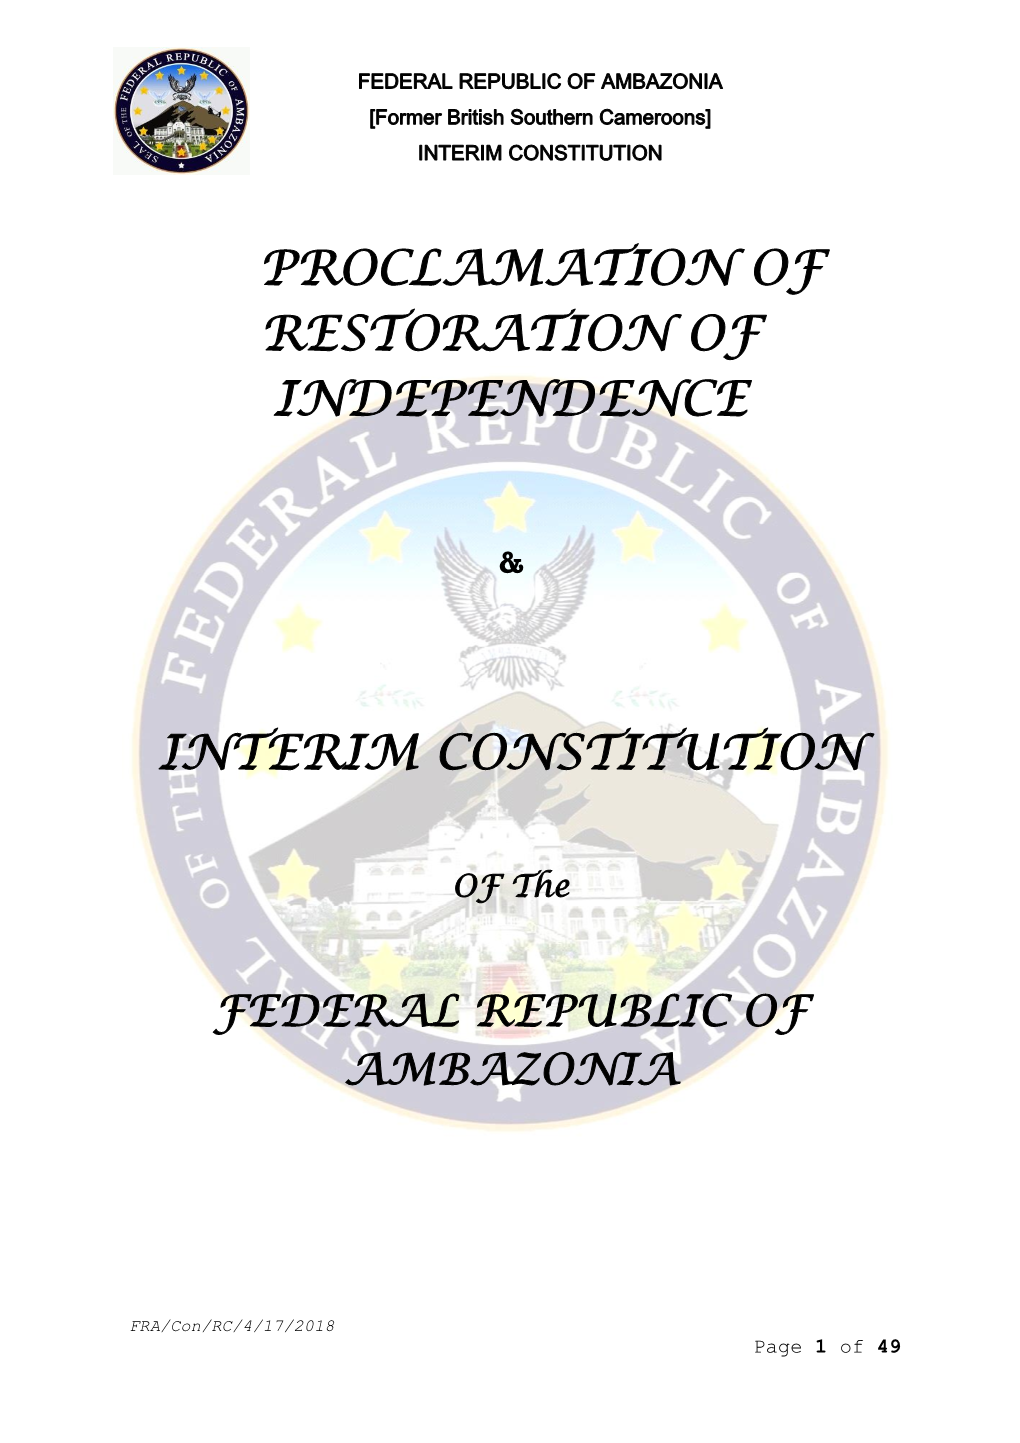 Interim Constitution of the Federal Republic of Ambazonia